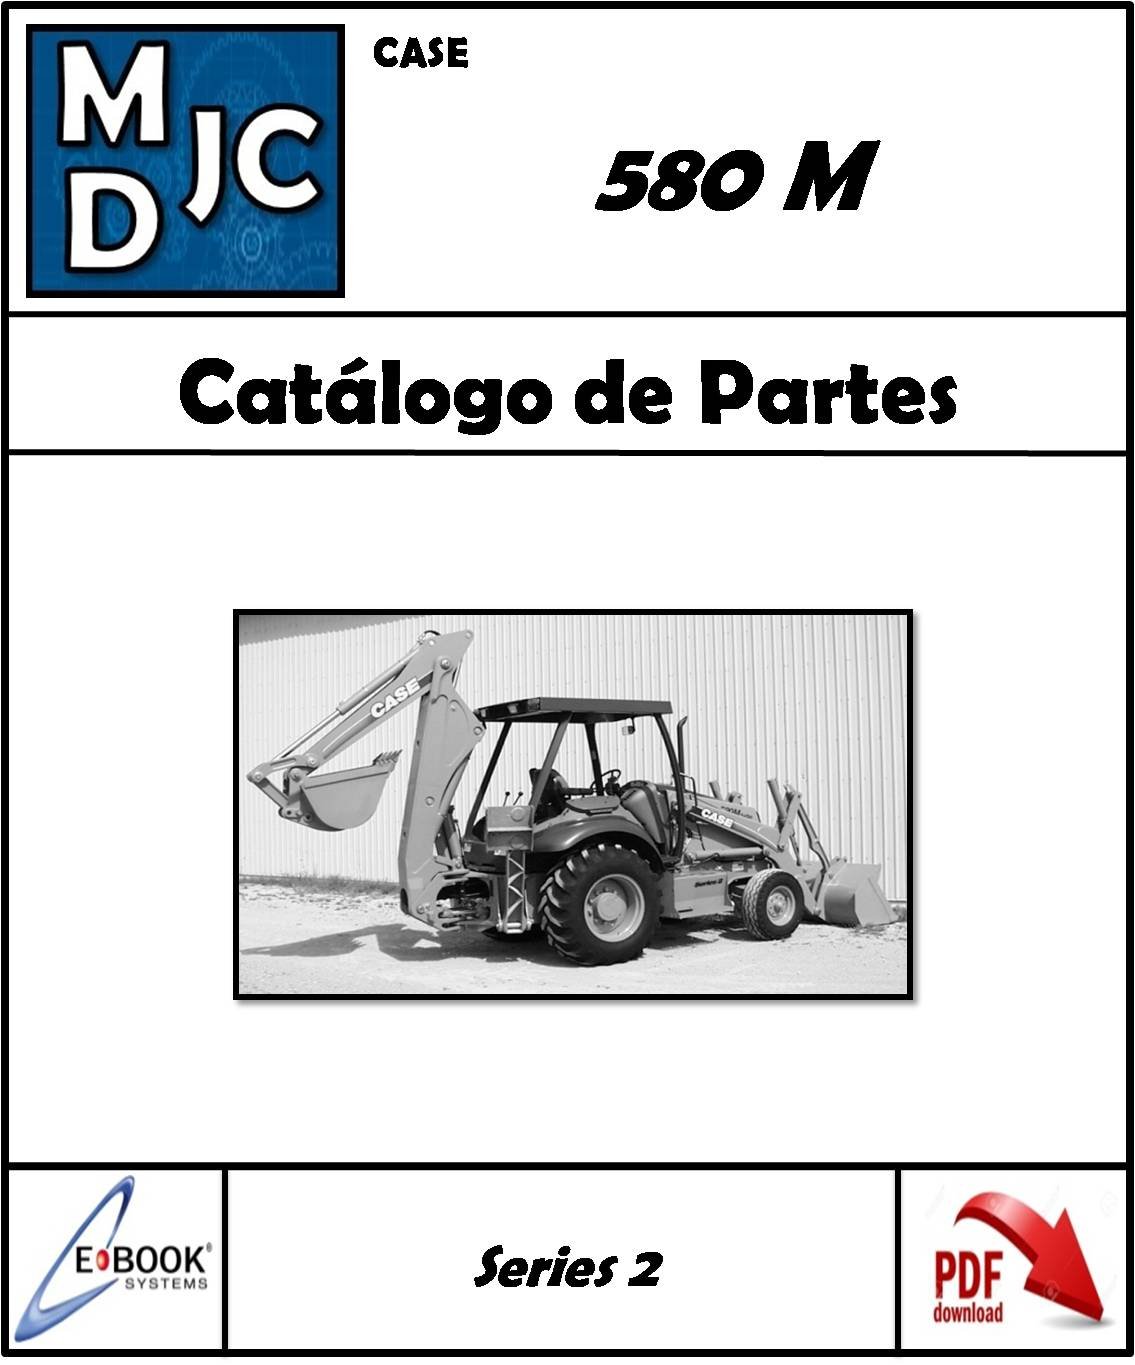 Catalogo de Partes Case 580 M Series 2